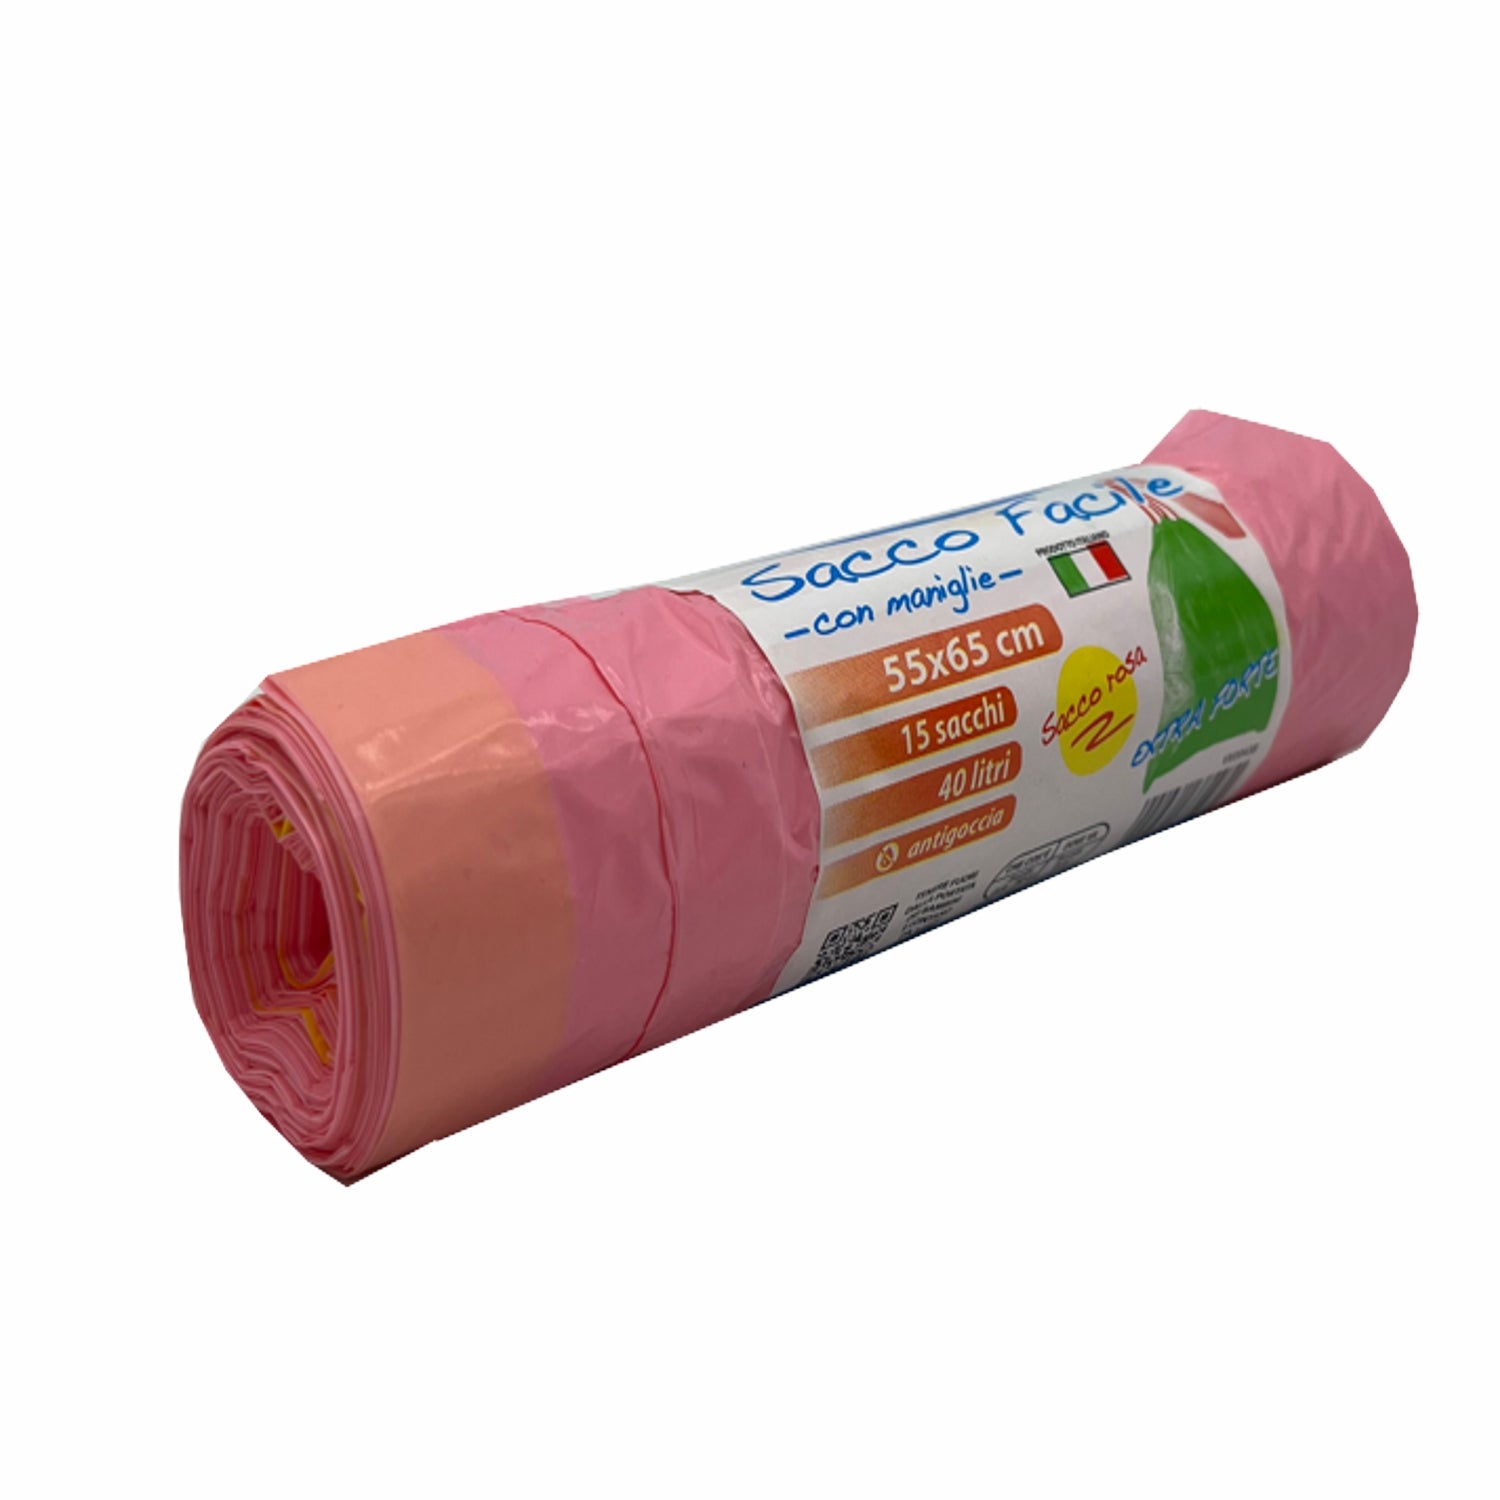 Sacco spazzatura cm.55x65 colore rosa peso gr.12 profumato pz.15 litri 40